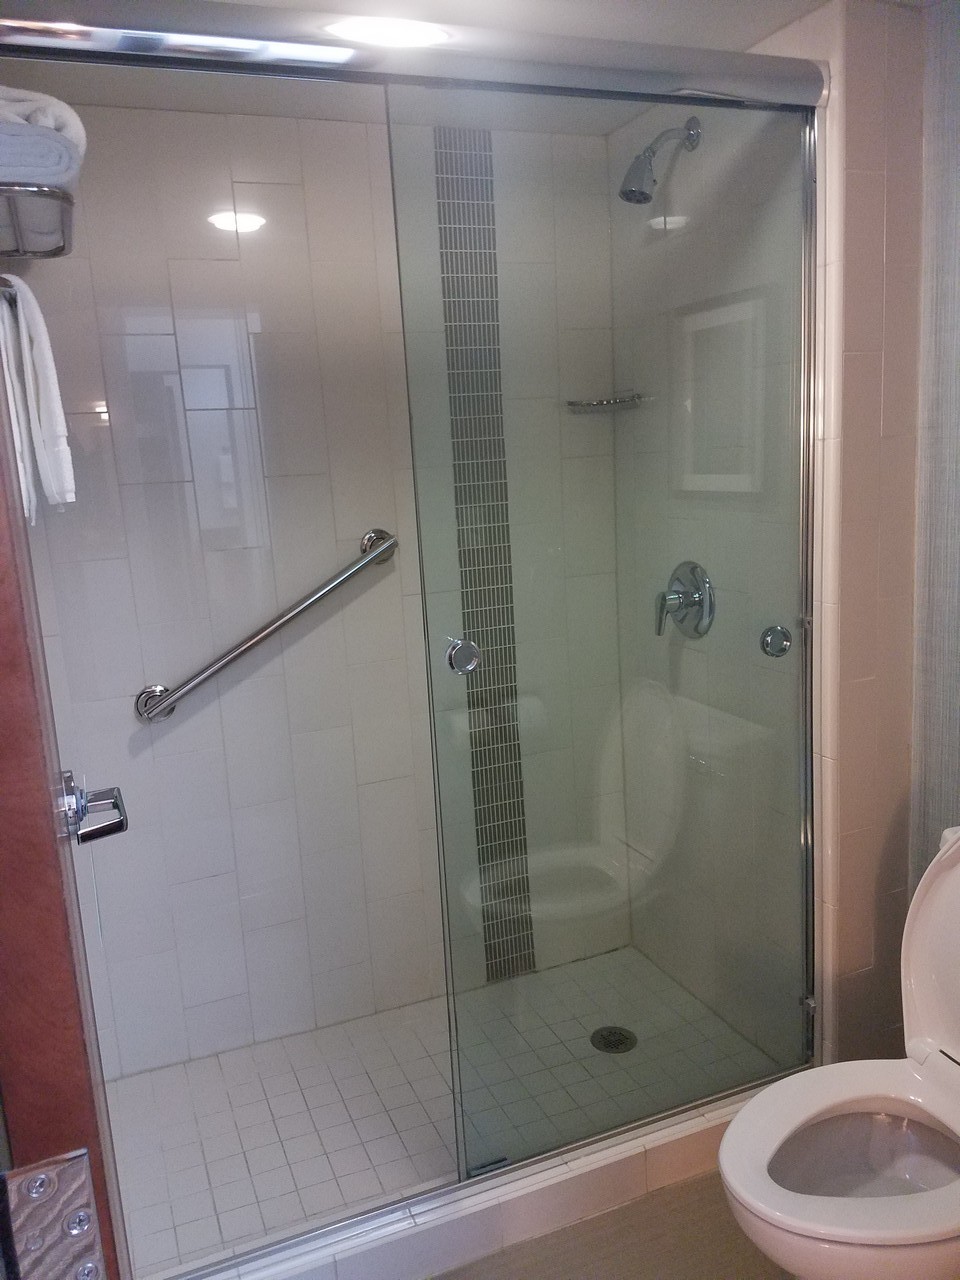 Hyatt Place shower